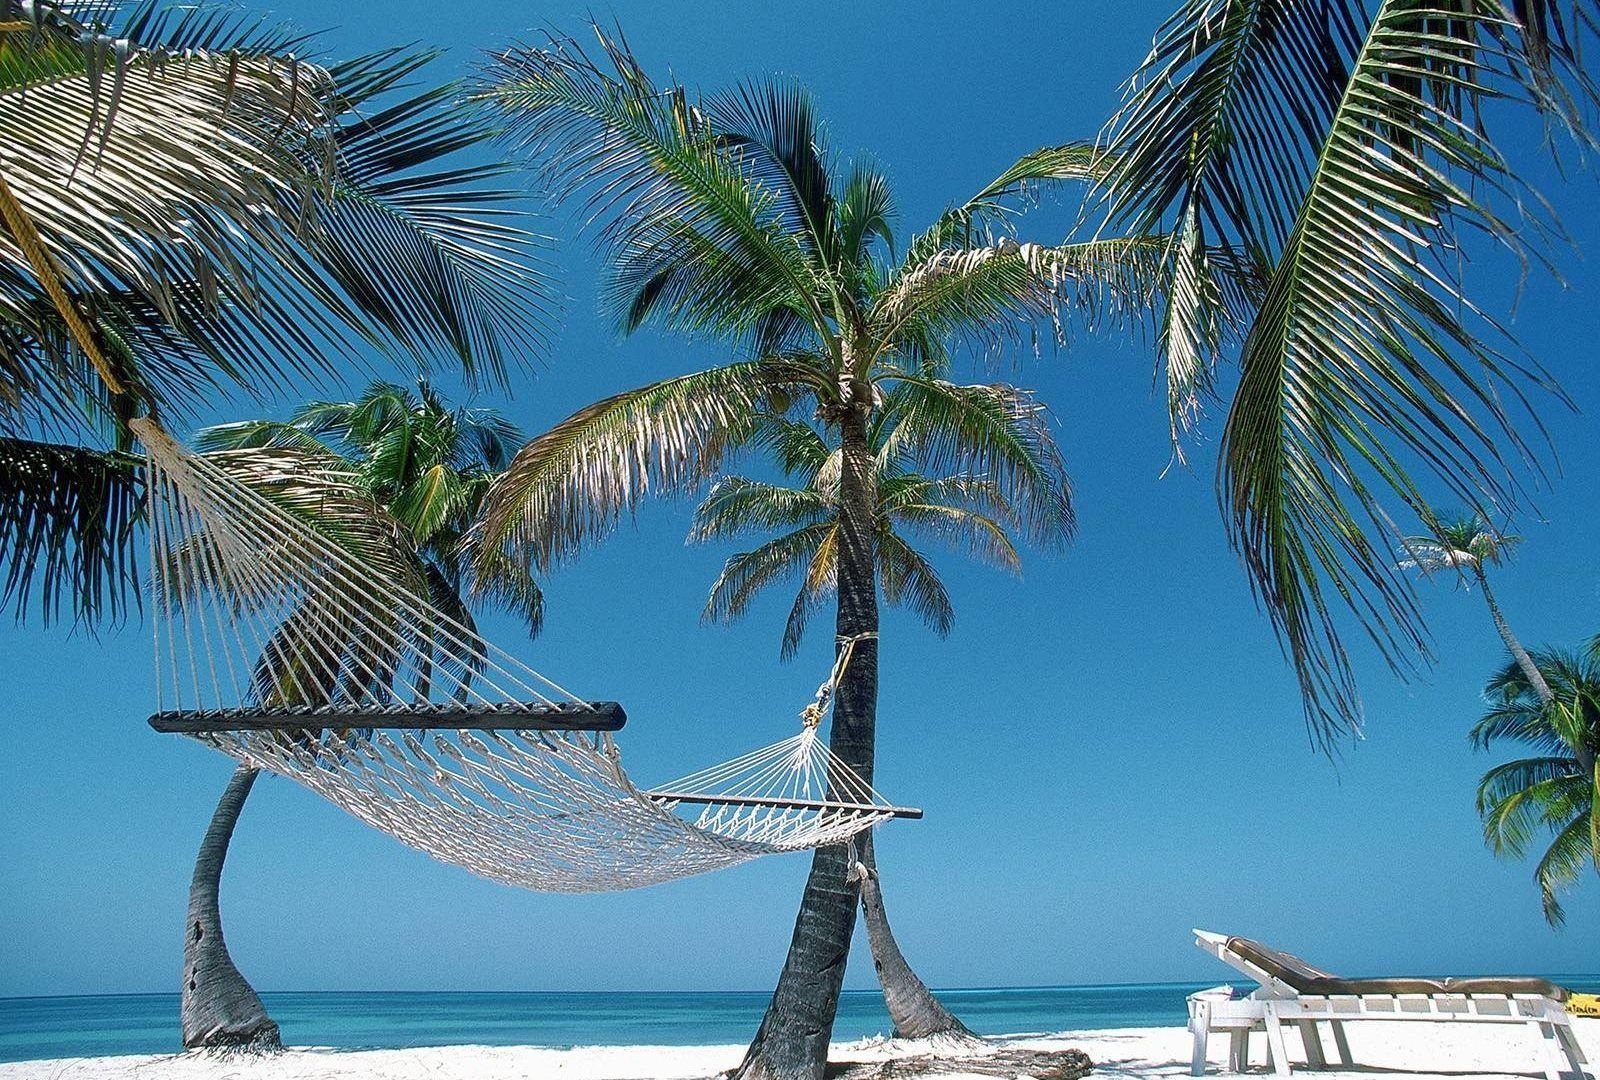 Haiti Tag wallpapers: Hiati Haiti Palm Beach Hammock Relaxing Tree